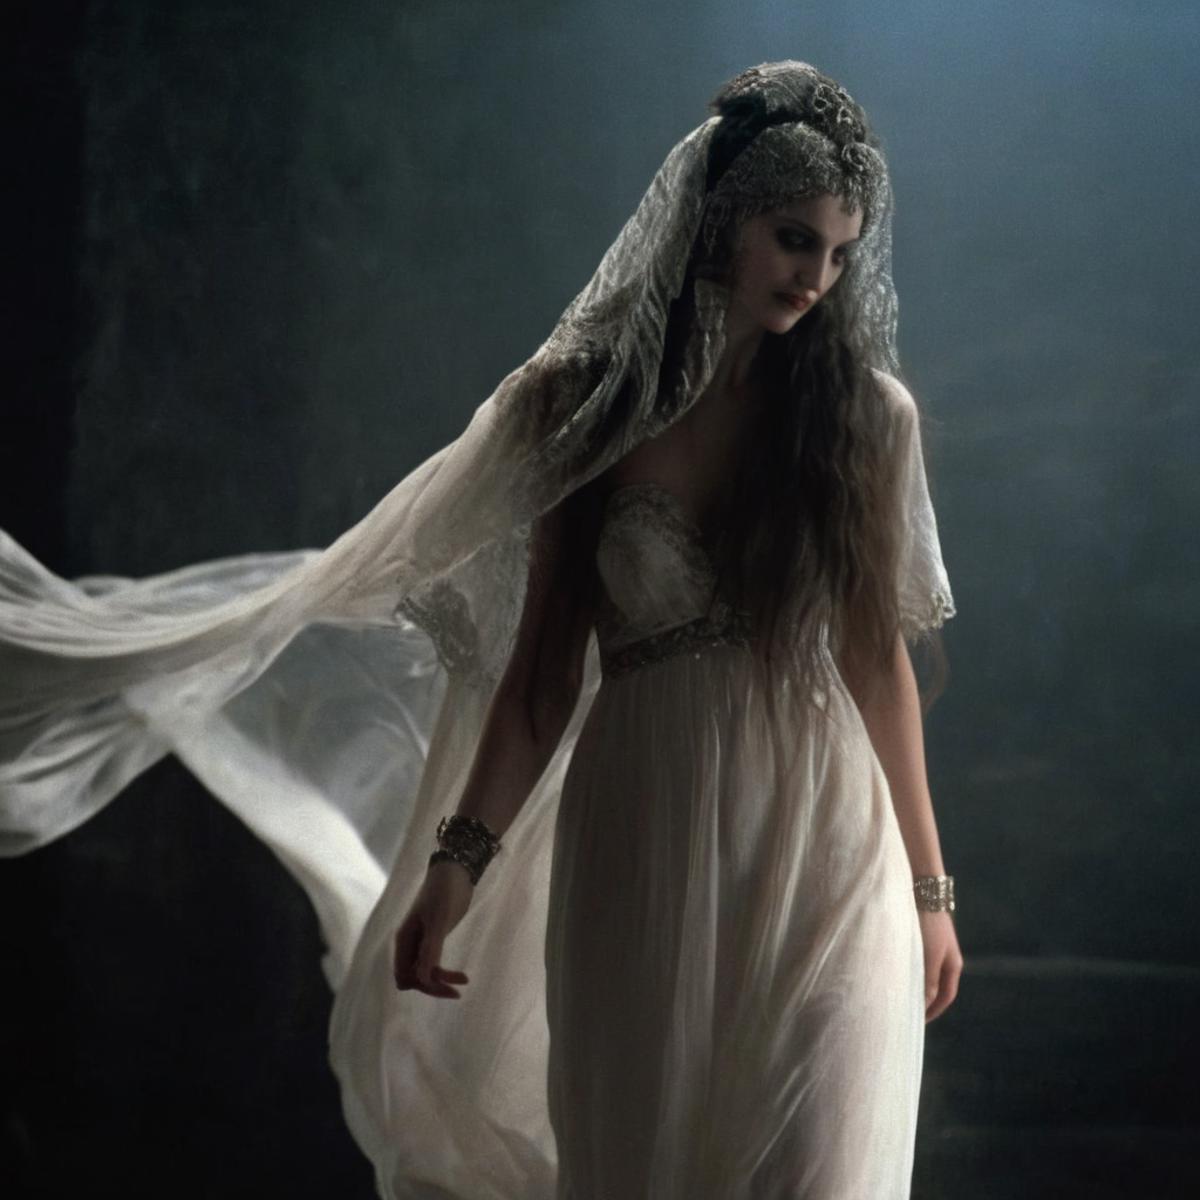 Brides of Dracula XL image by vantablackdark